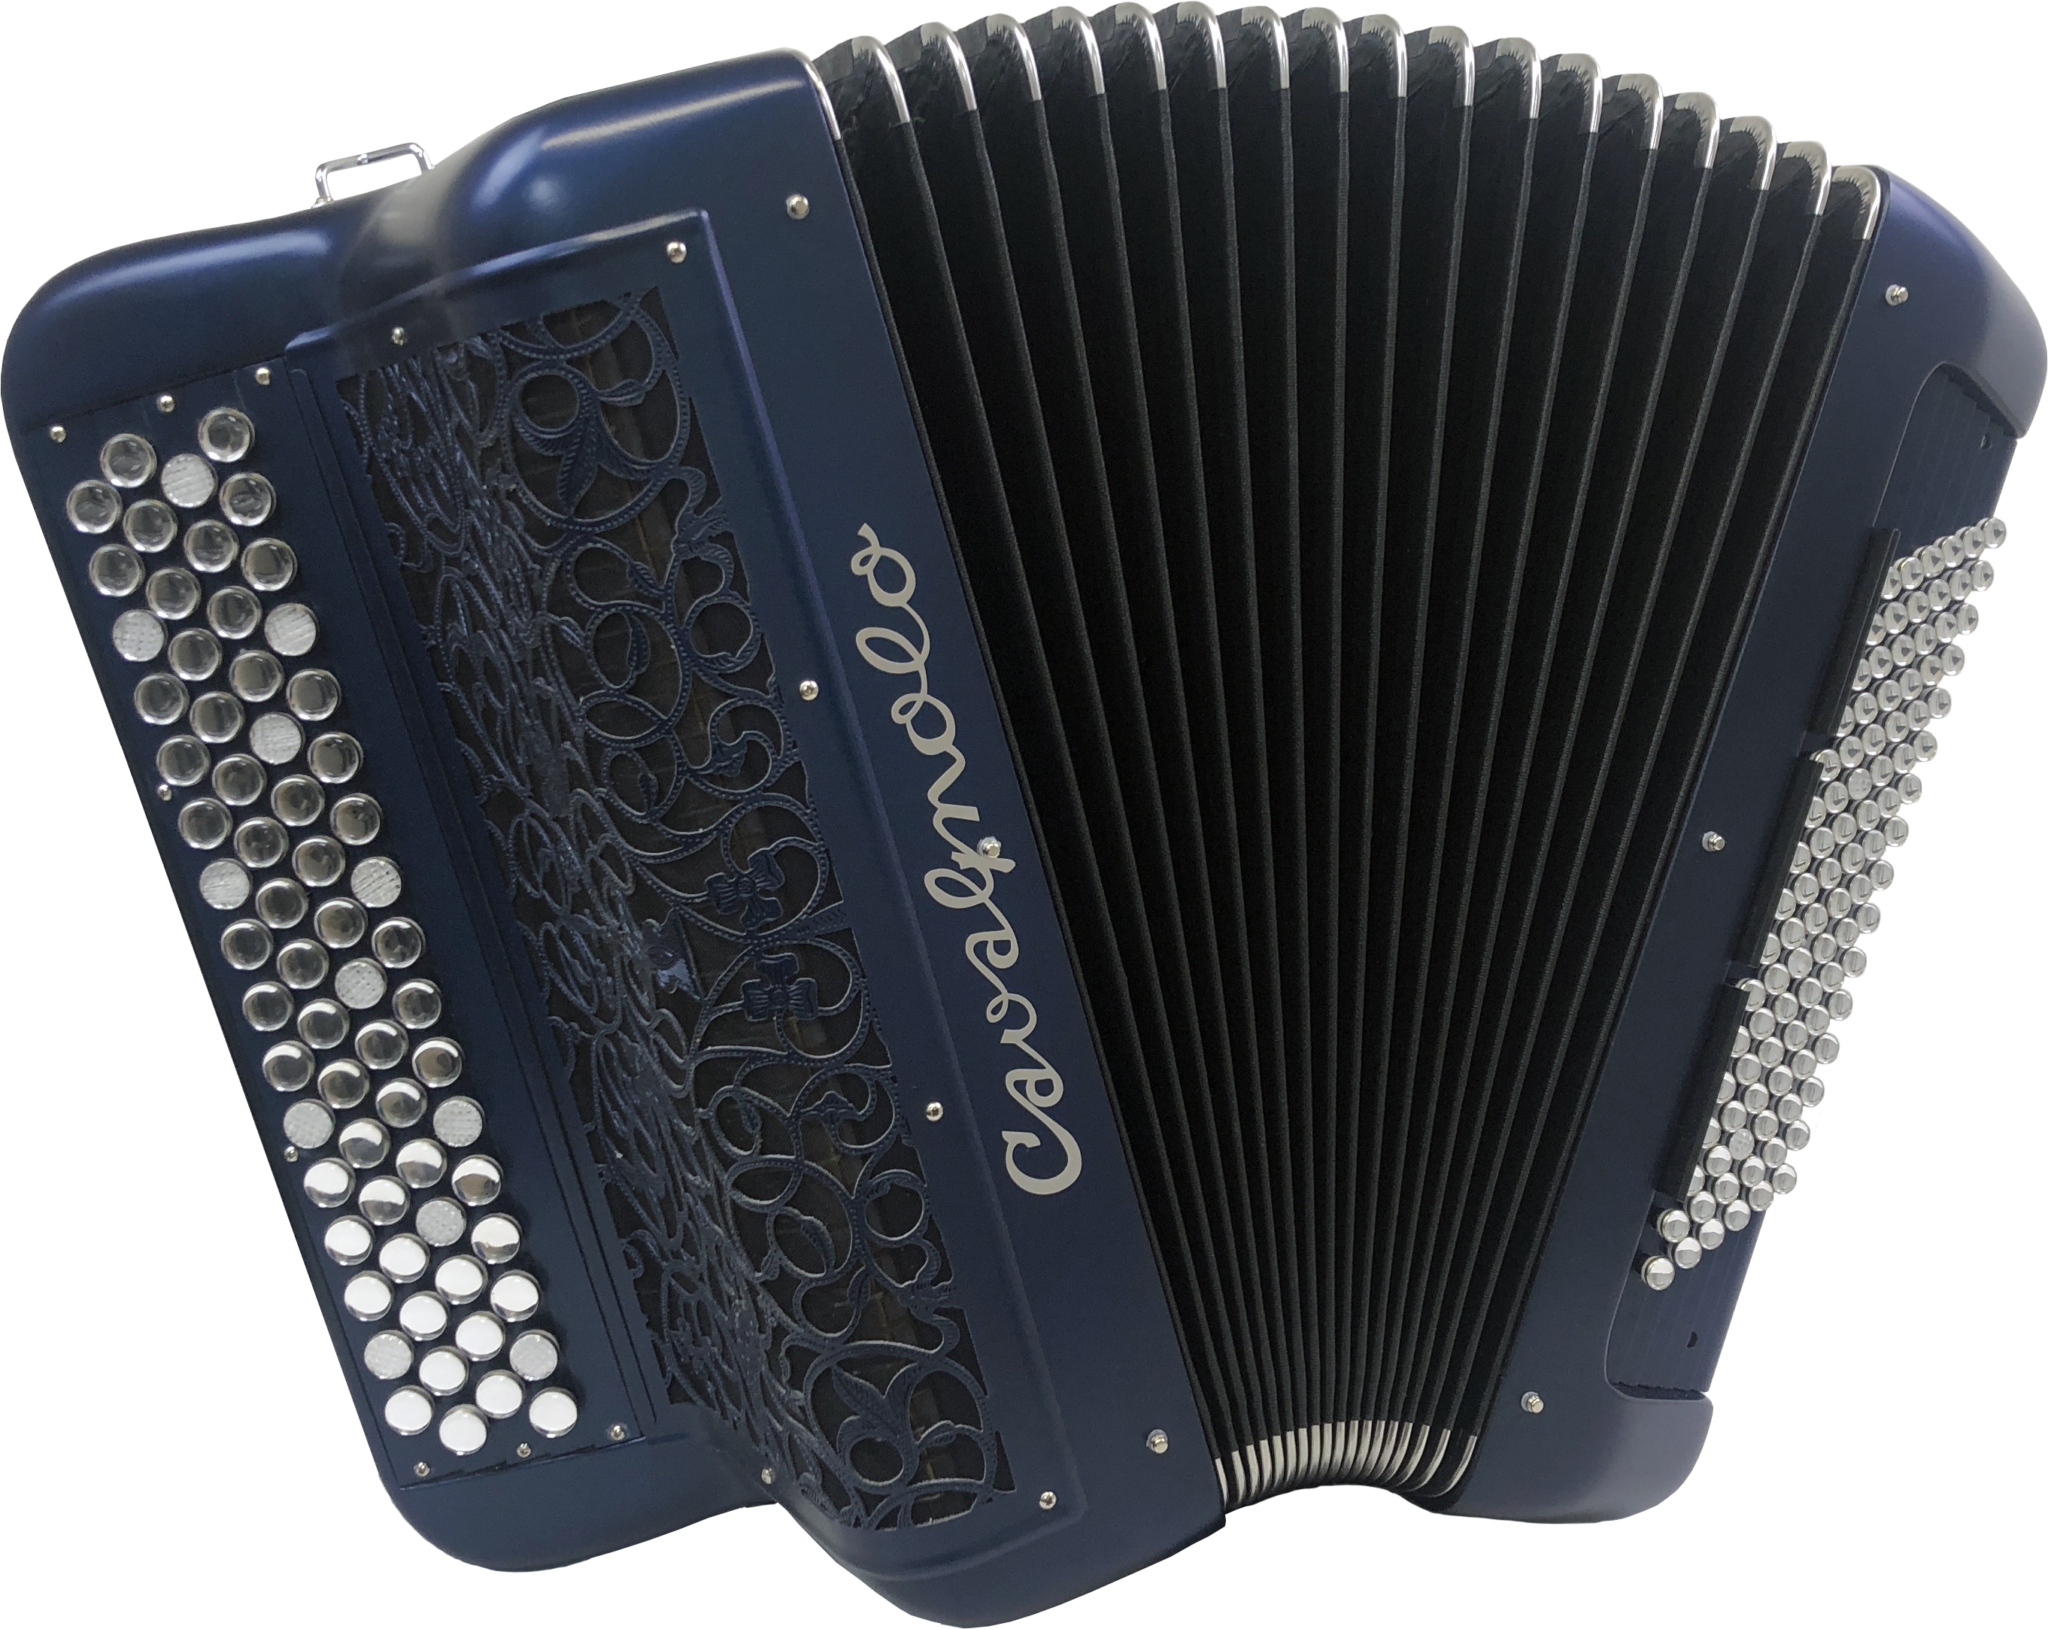 Différencier les types d'instruments - Accordéons - La boîte d'accordéon